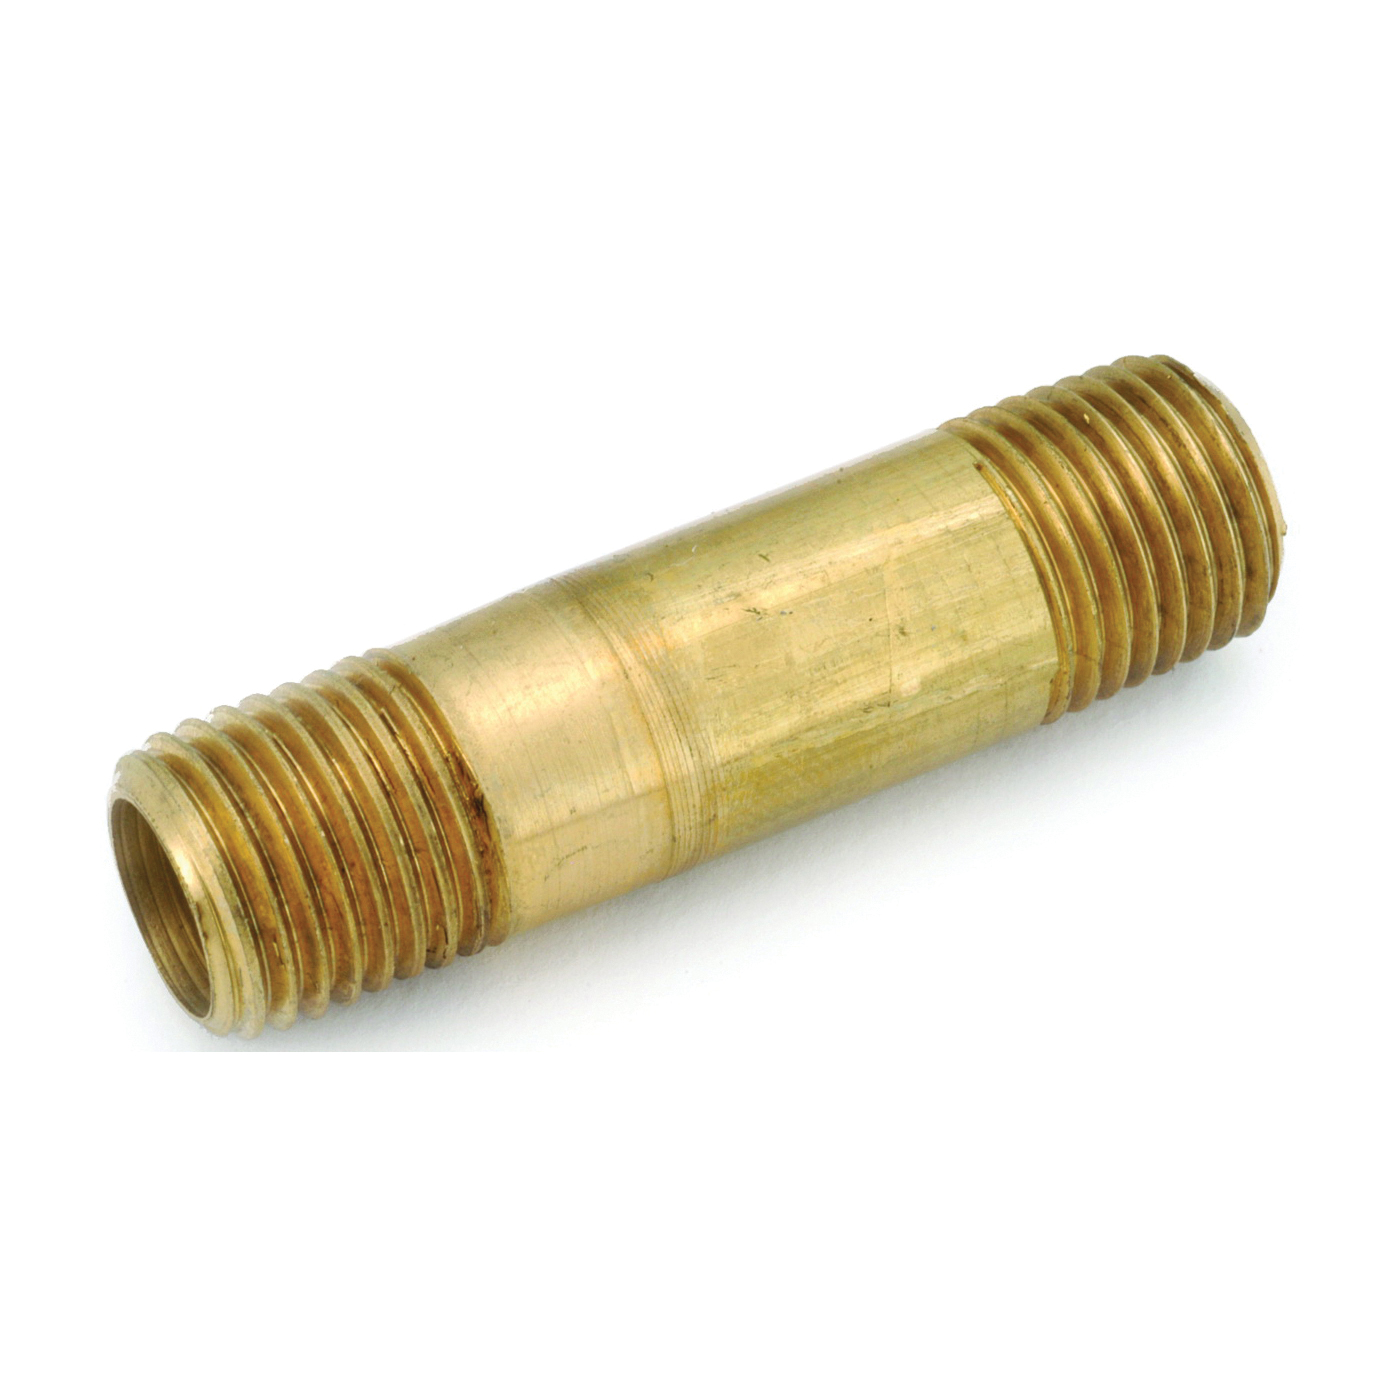 736113-0440 Pipe Nipple, 1/4 in, NPT, Brass, 2-1/2 in L